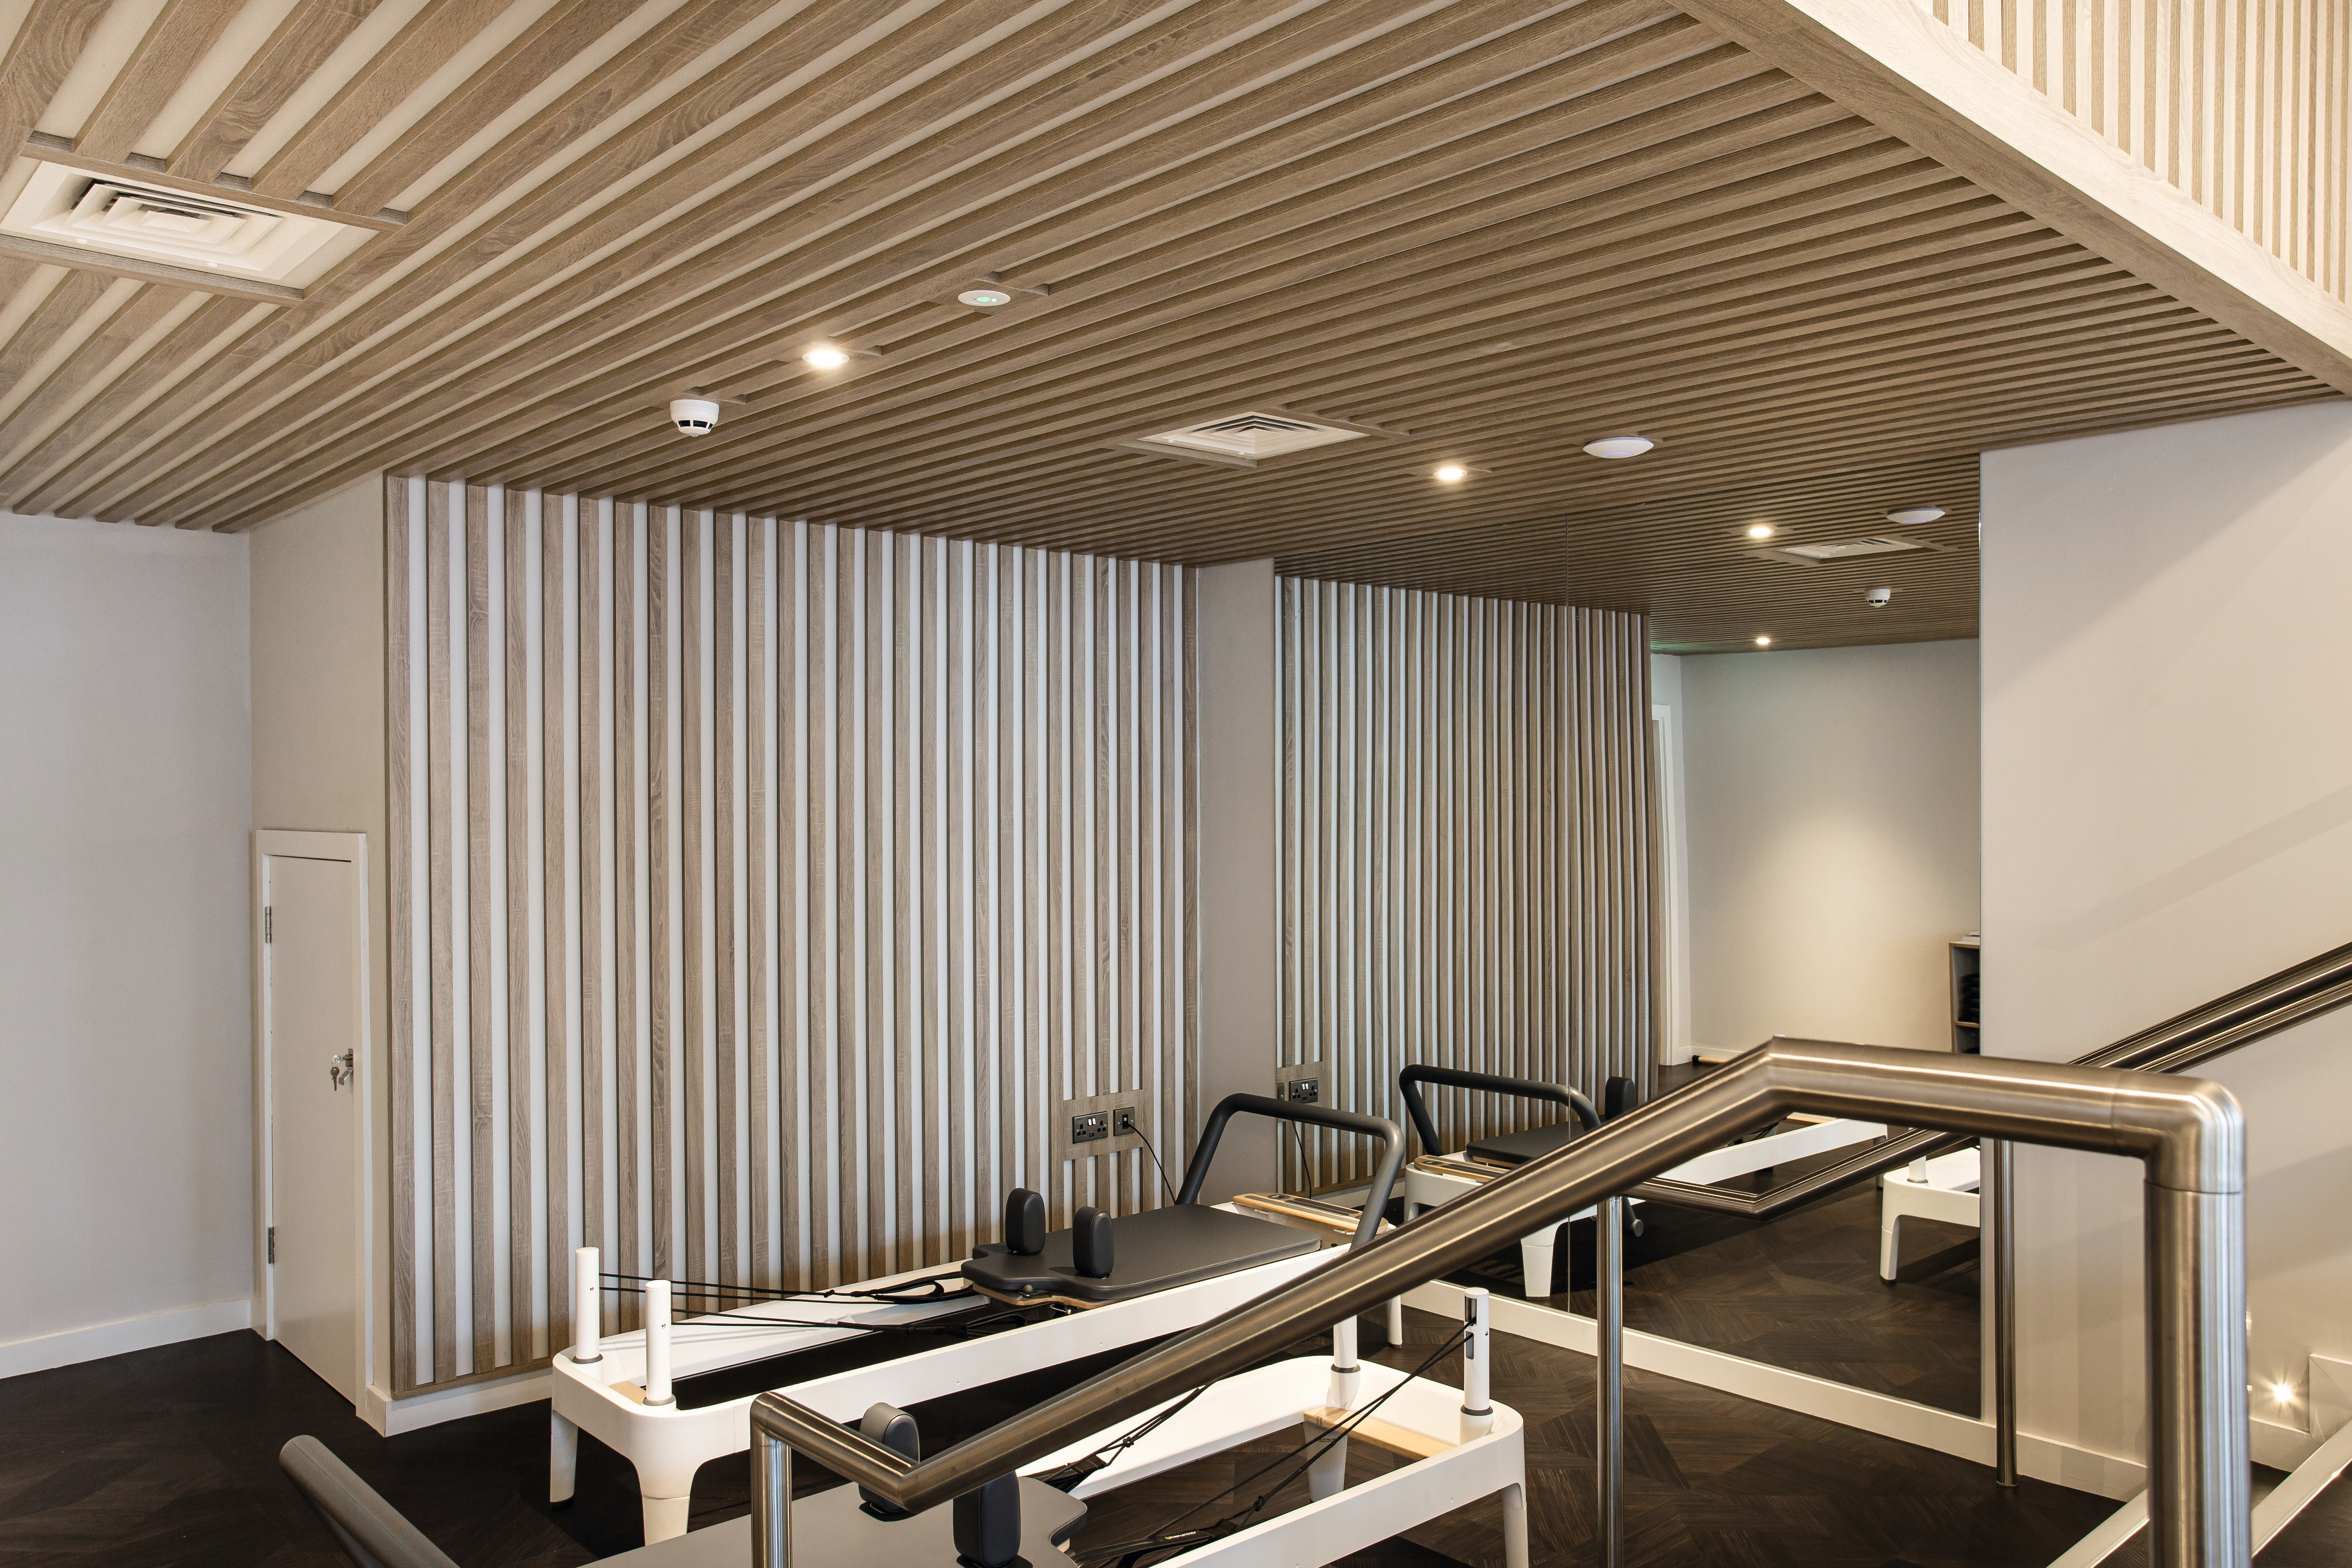 W nowym studio odnowy biologicznej na wszystkich trzech piętrach zastosowano panele dekoracyjne, laminaty i obrzeża w tym samym dekorze.